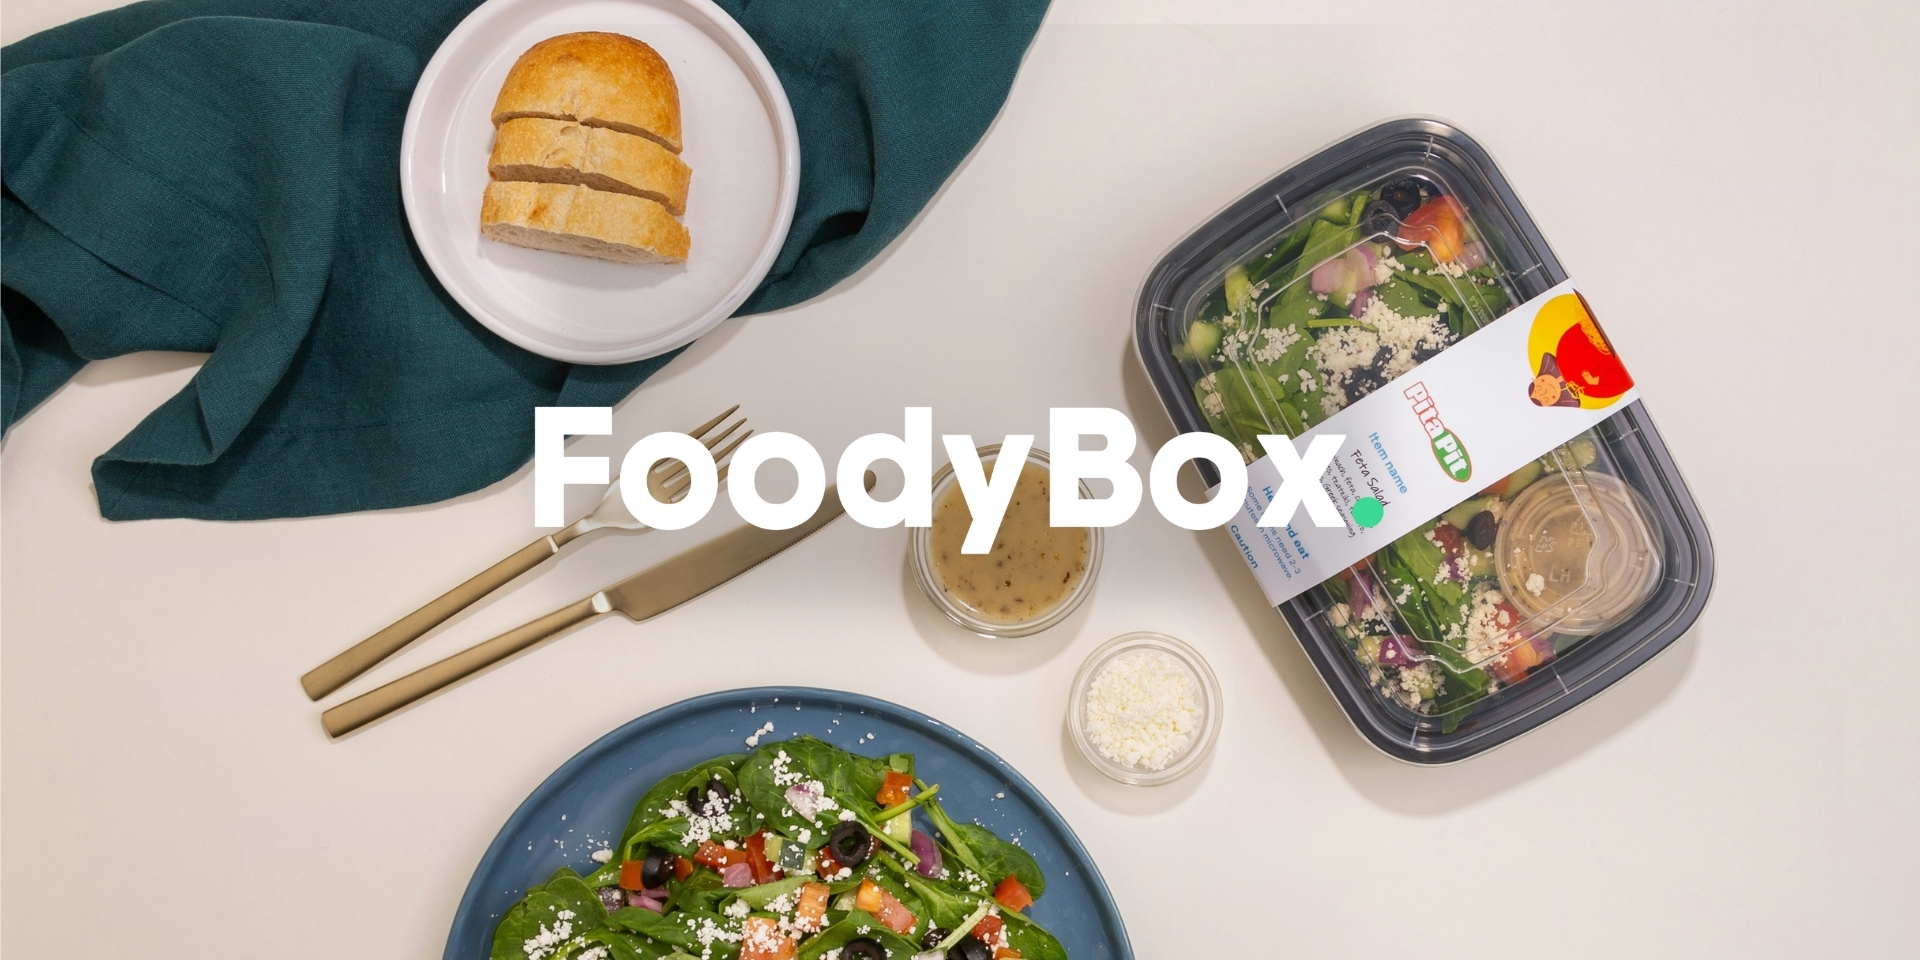 TG Coders - Pronect - Założyciel Foody Box